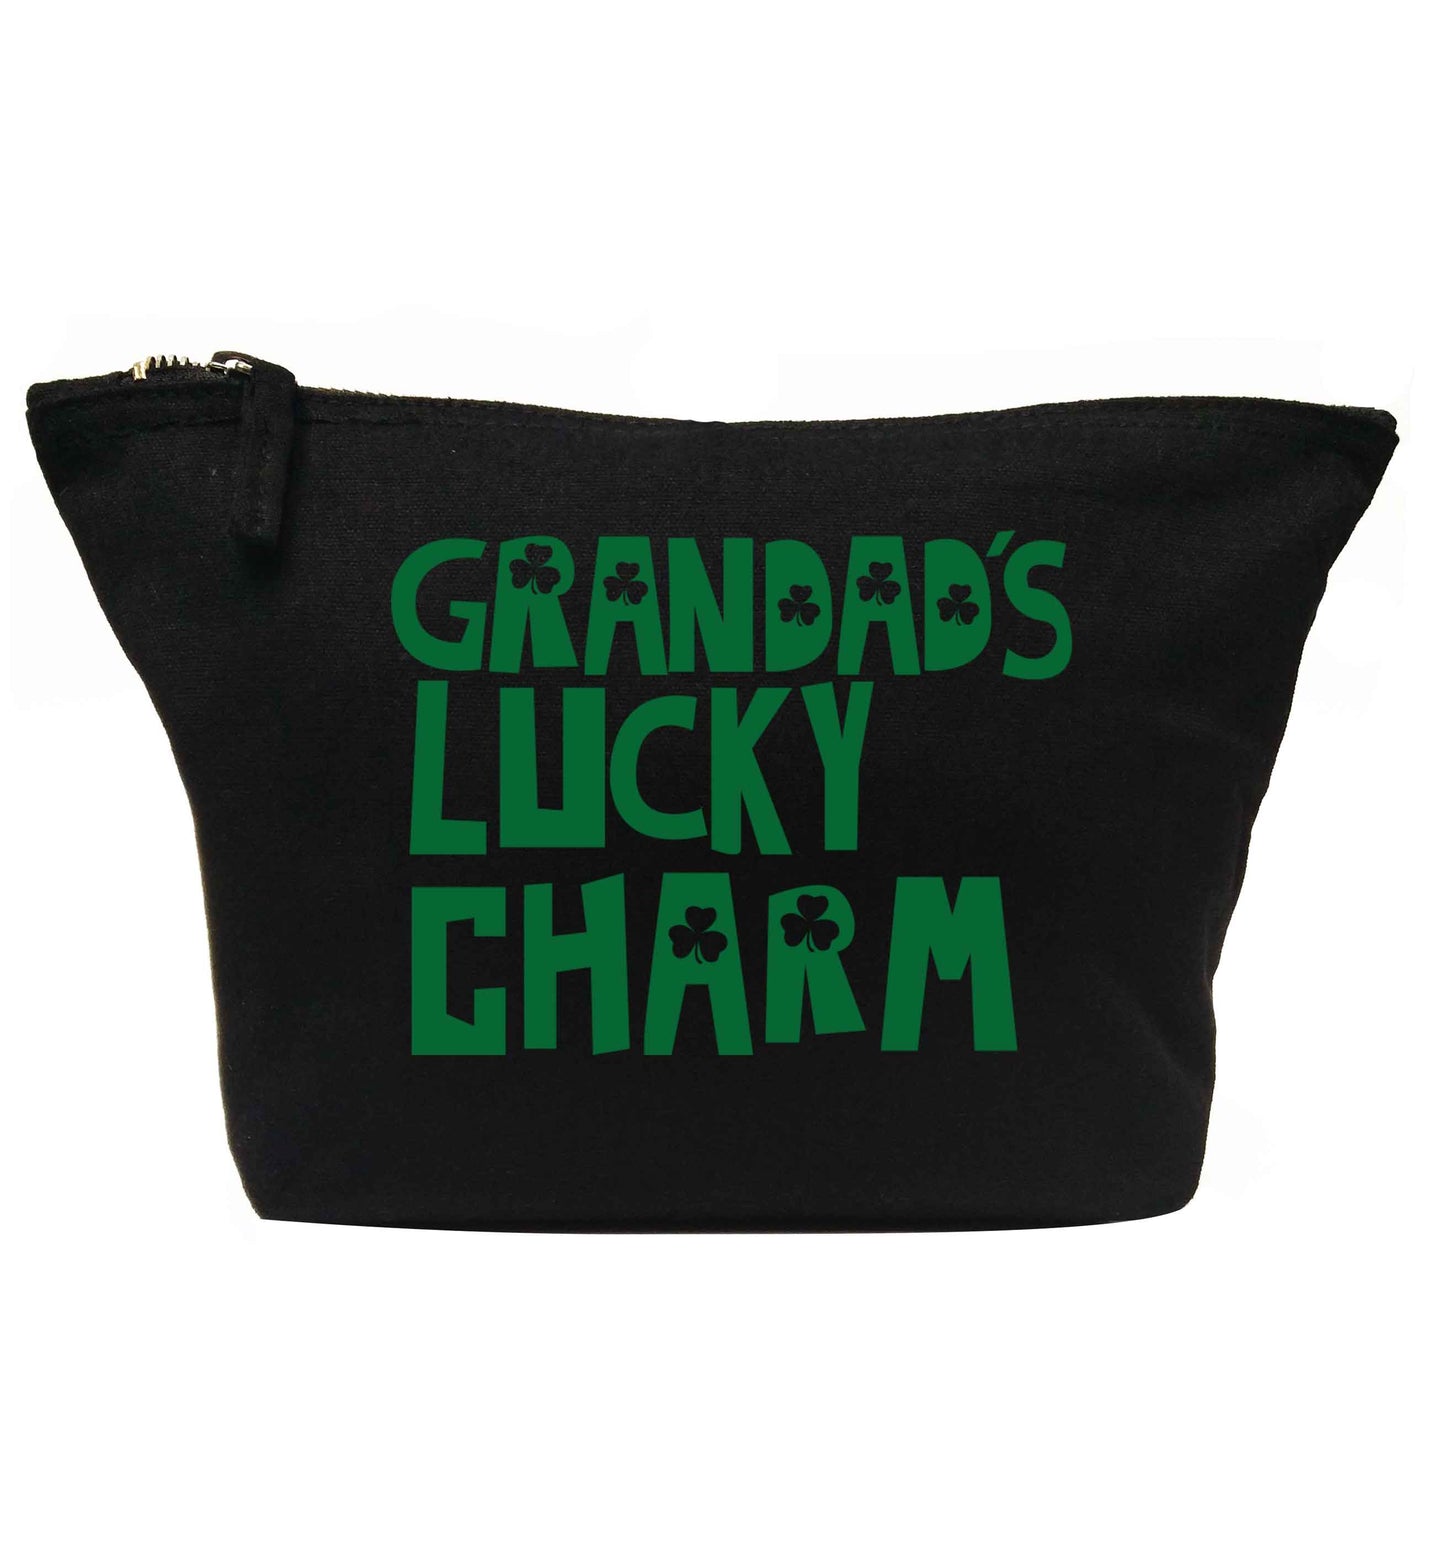 Grandad's lucky charm  | Makeup / wash bag